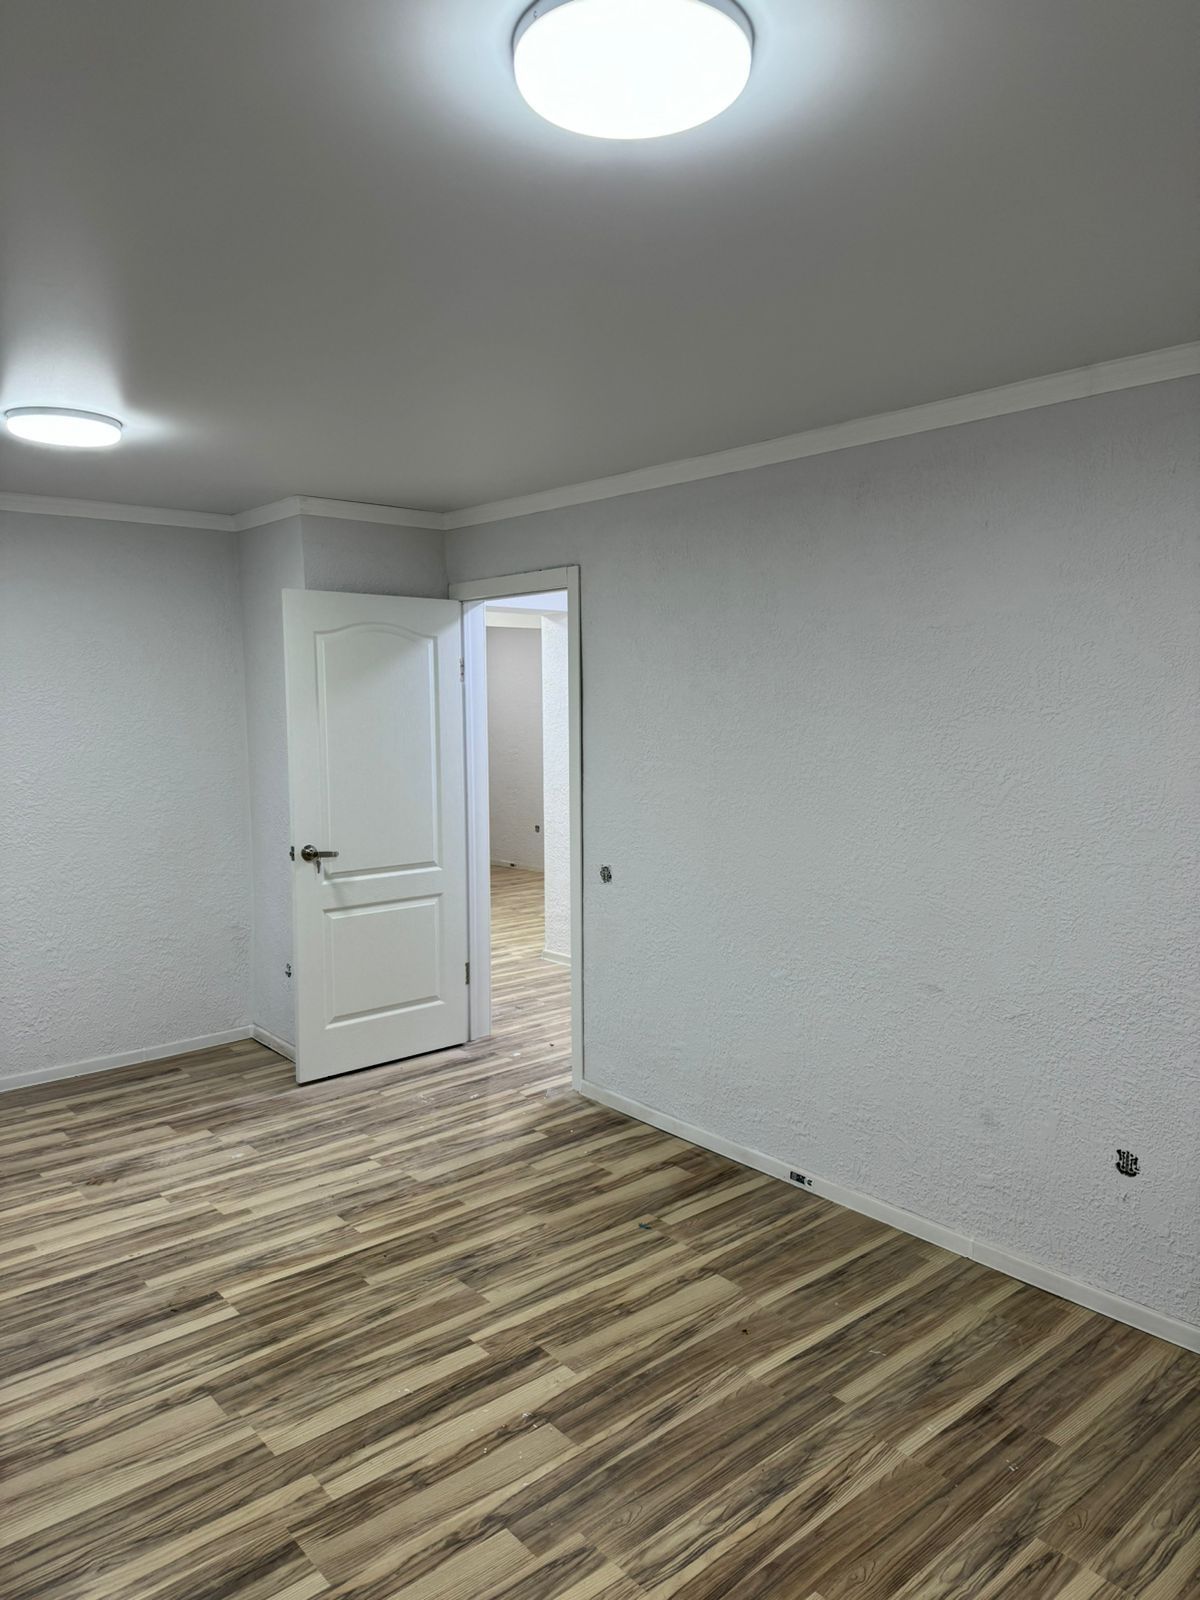 Продам квартиру площадь 50.3 м.кв( Новый ремонт)